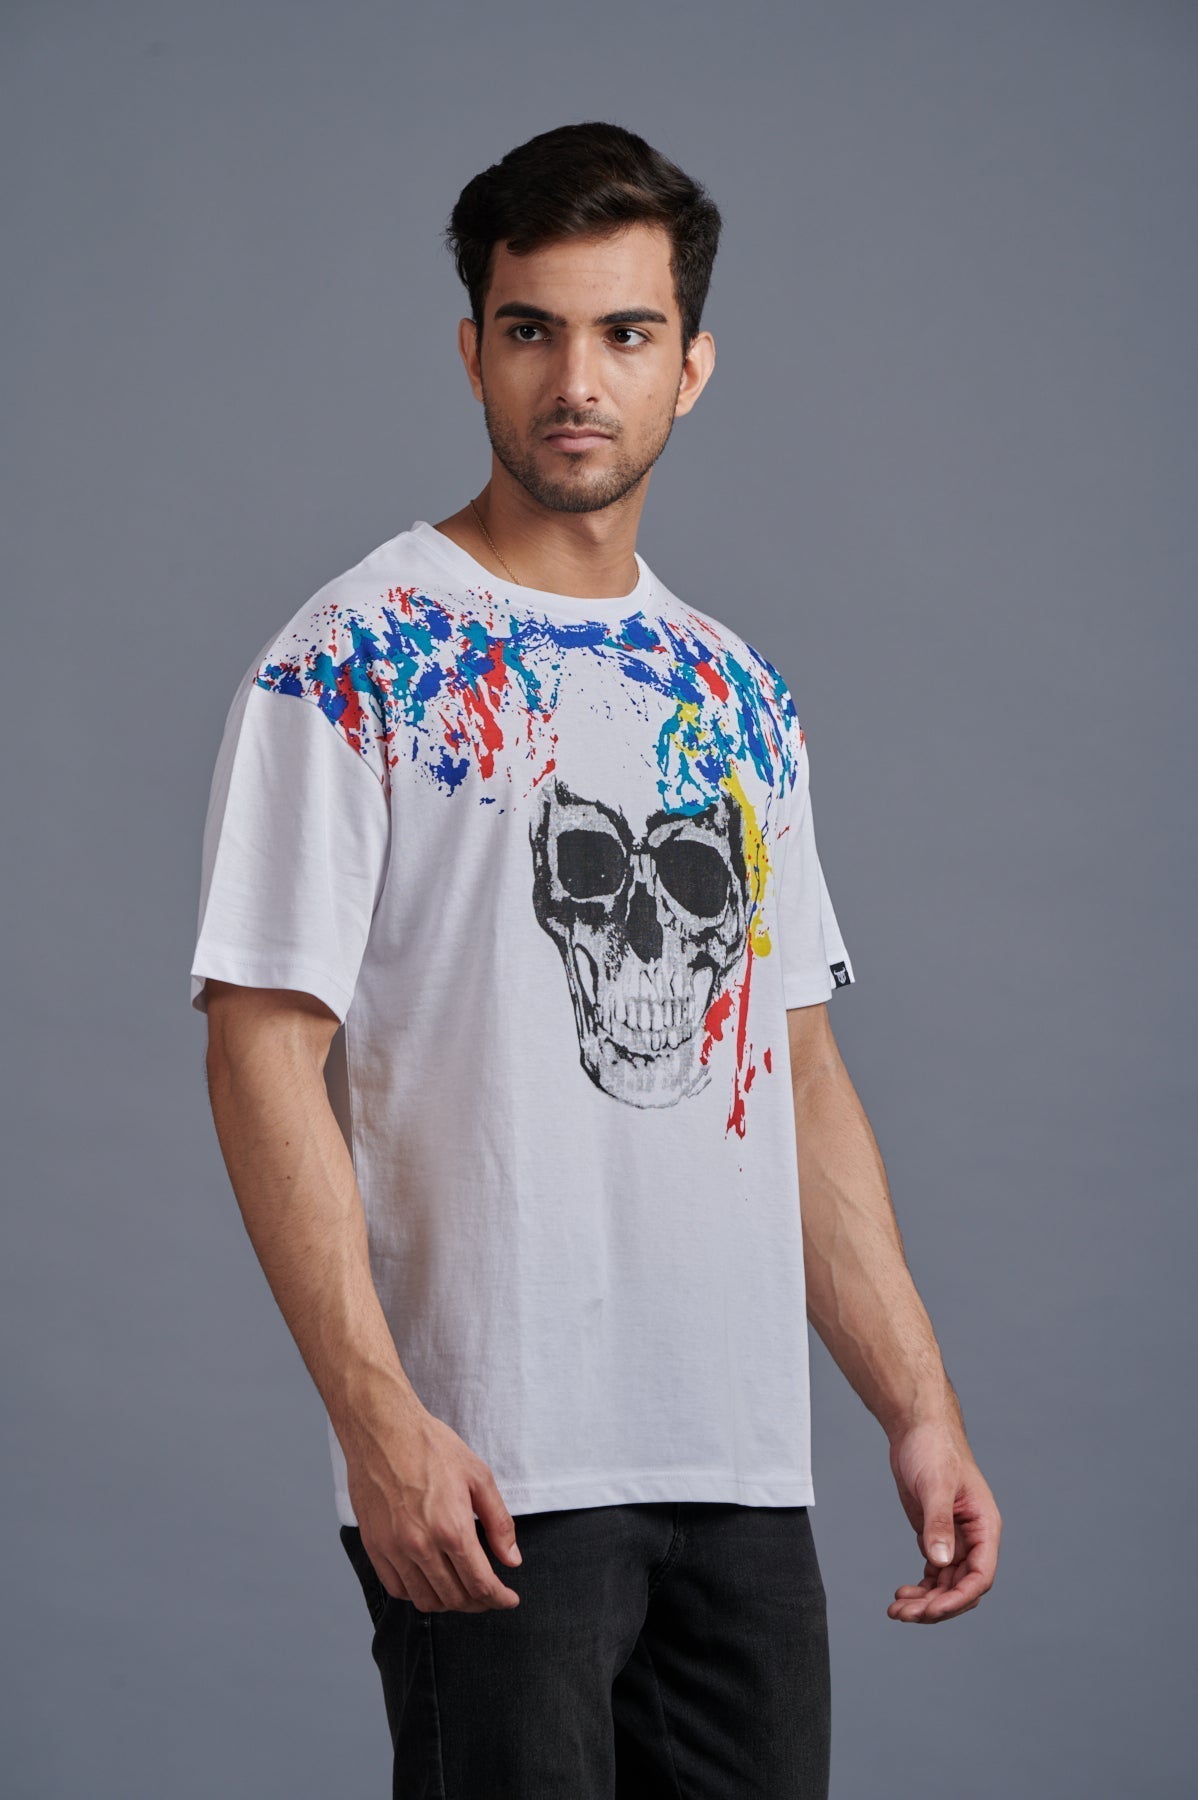 Skull Printed Oversized White T-Shirt for Men - Go Devil